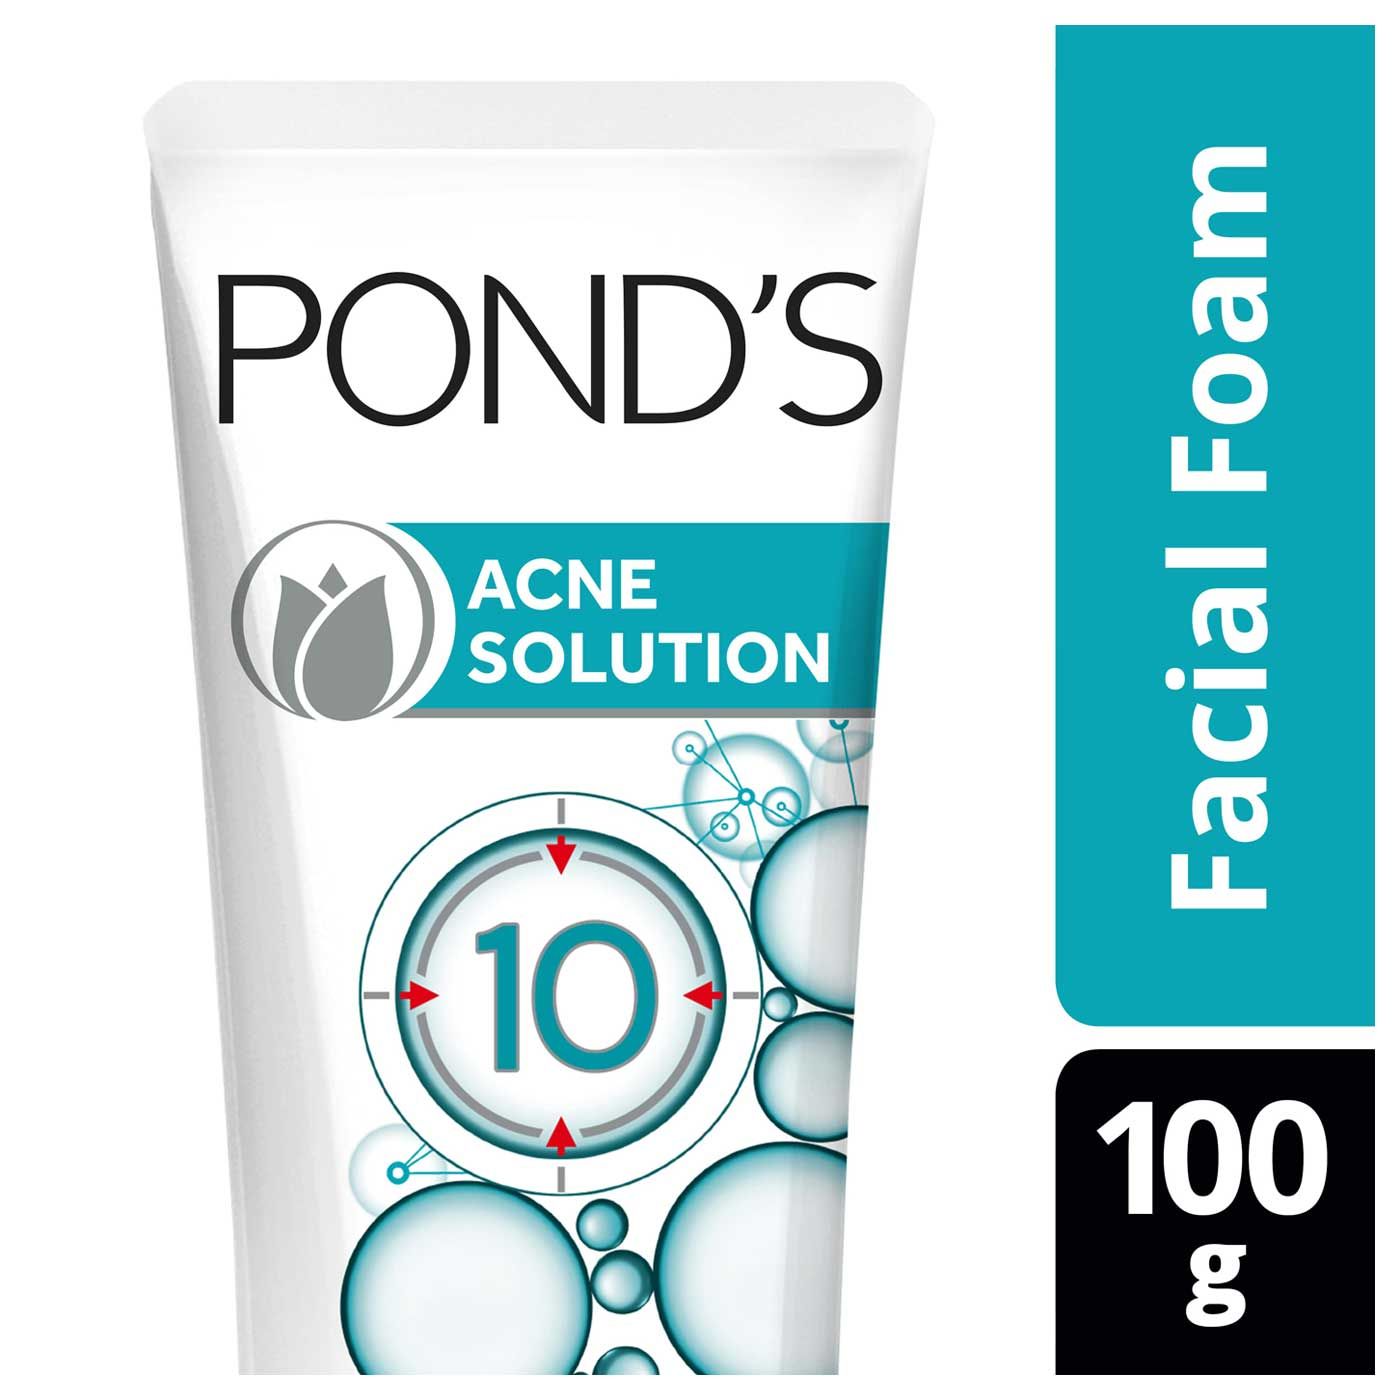 Pond'S Acne Solution Facial Foam 100g - 2